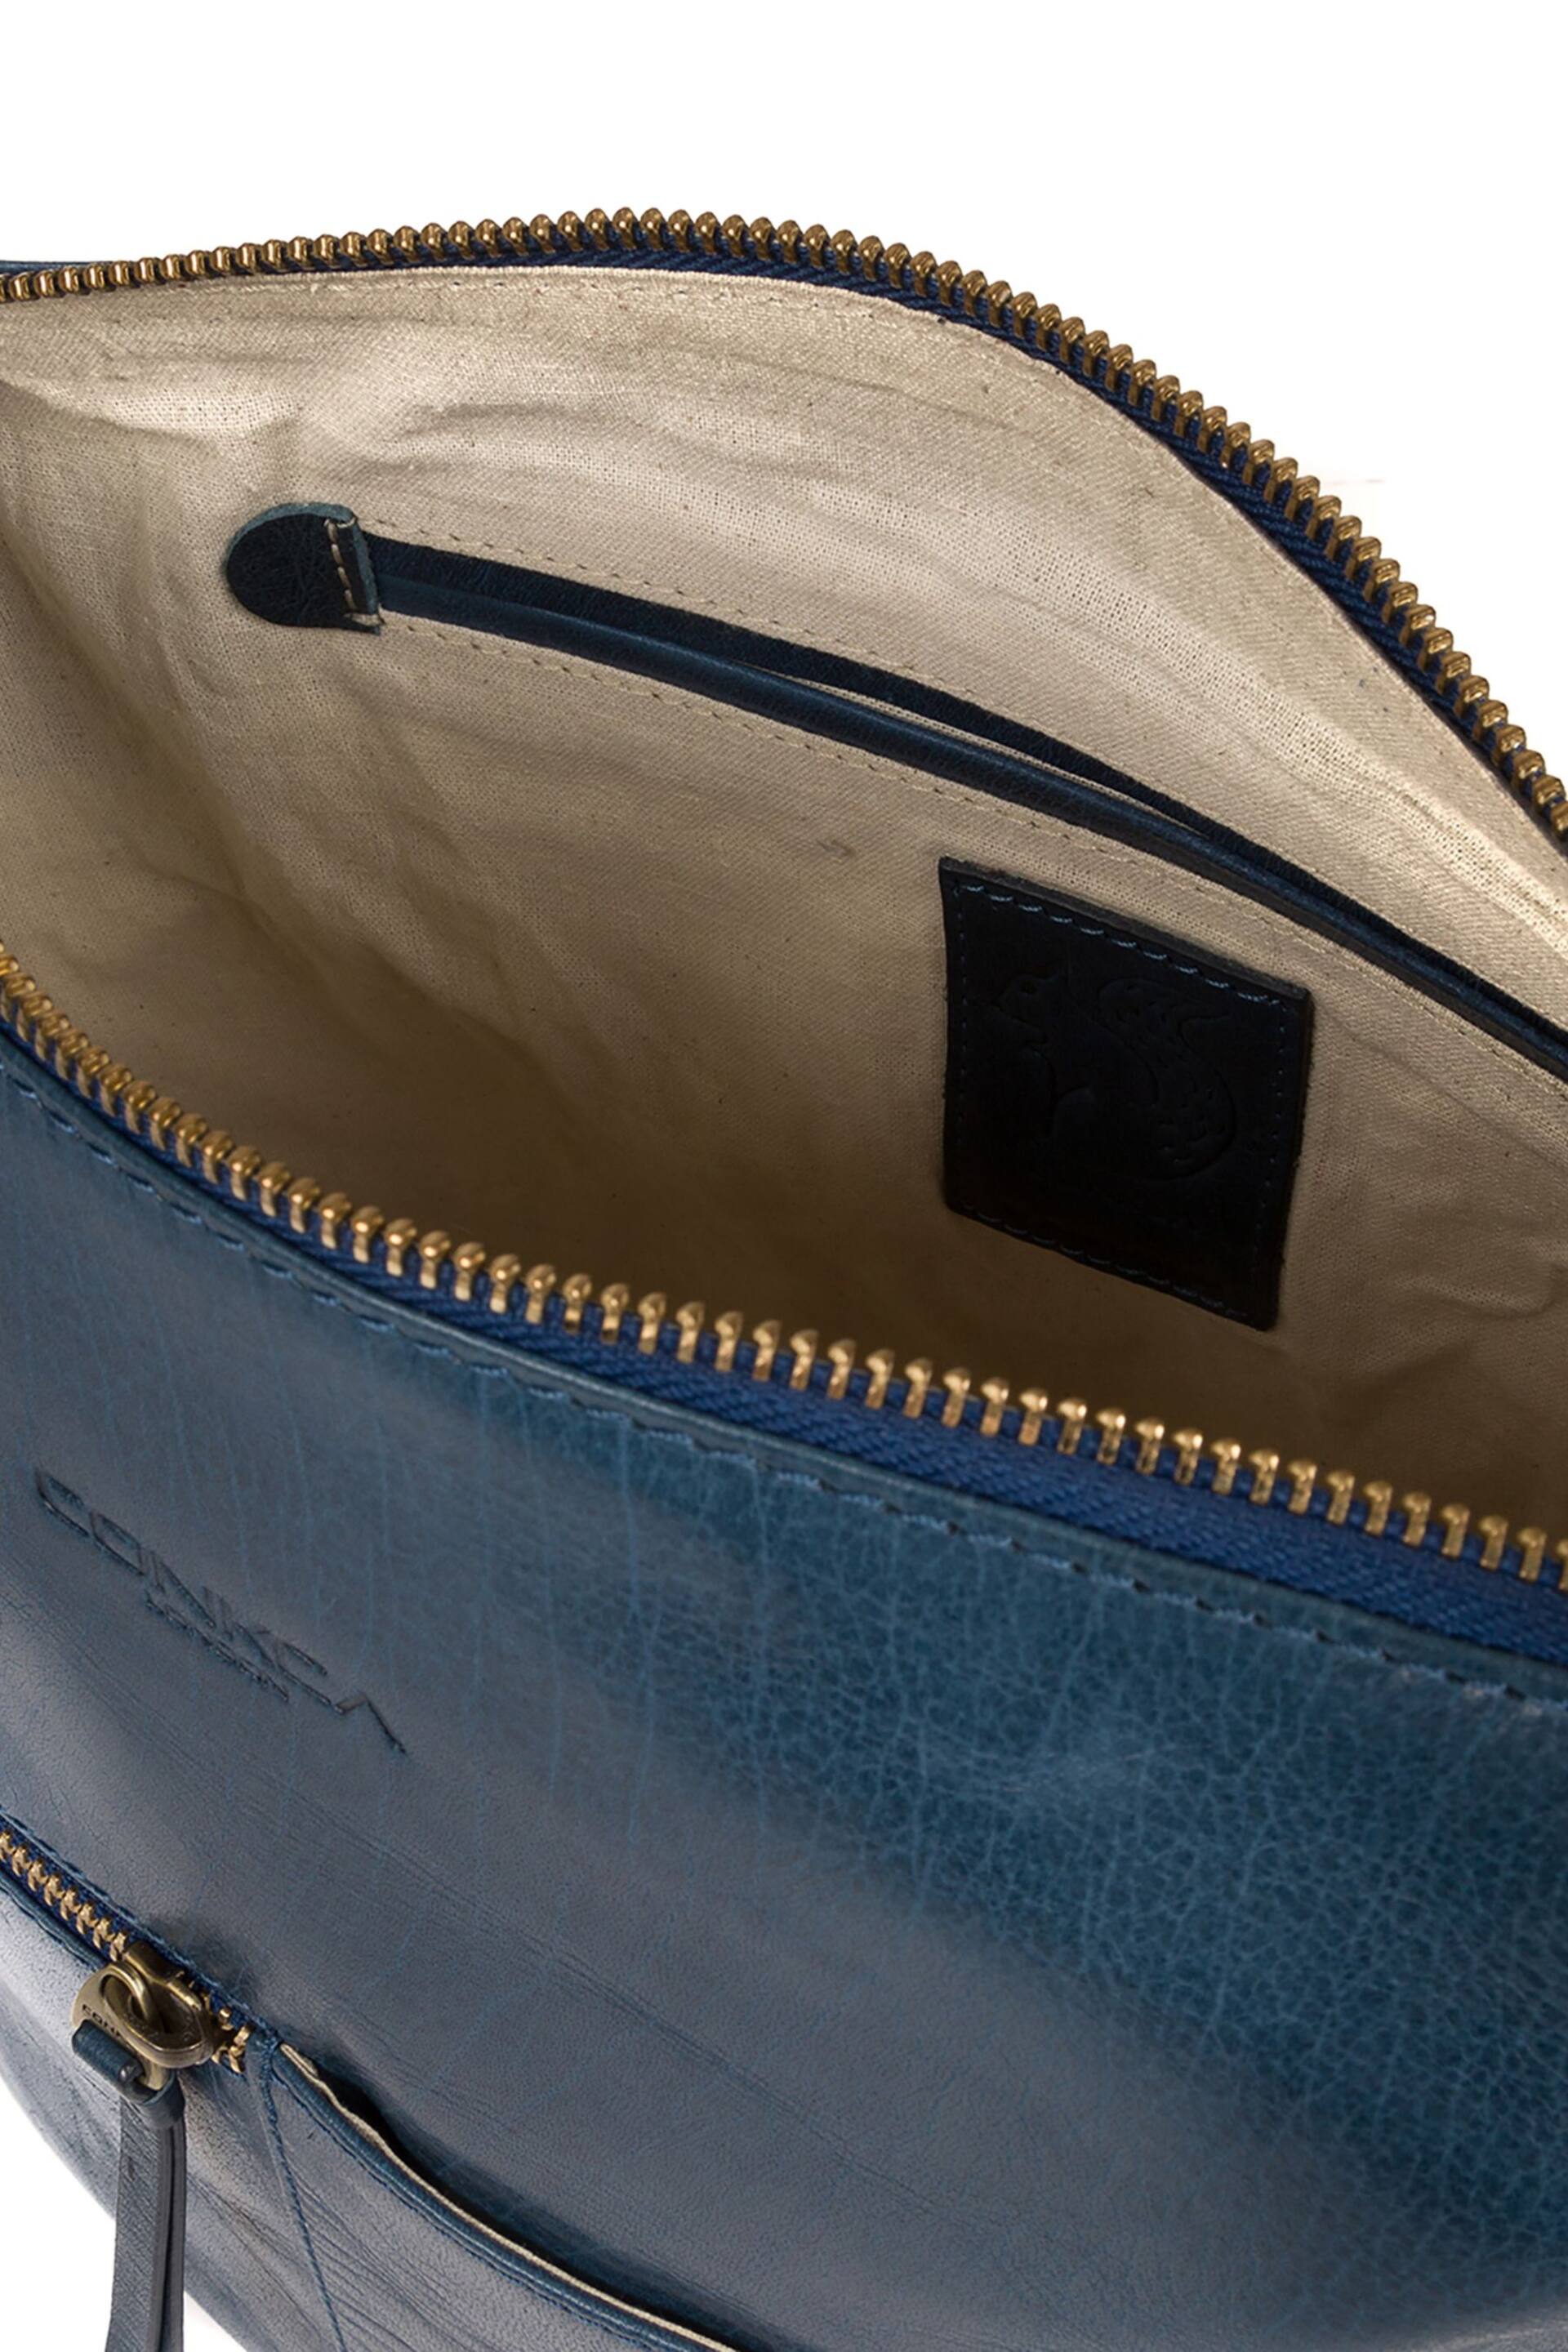 Conkca Kristin Leather Shoulder Bag - Image 4 of 7